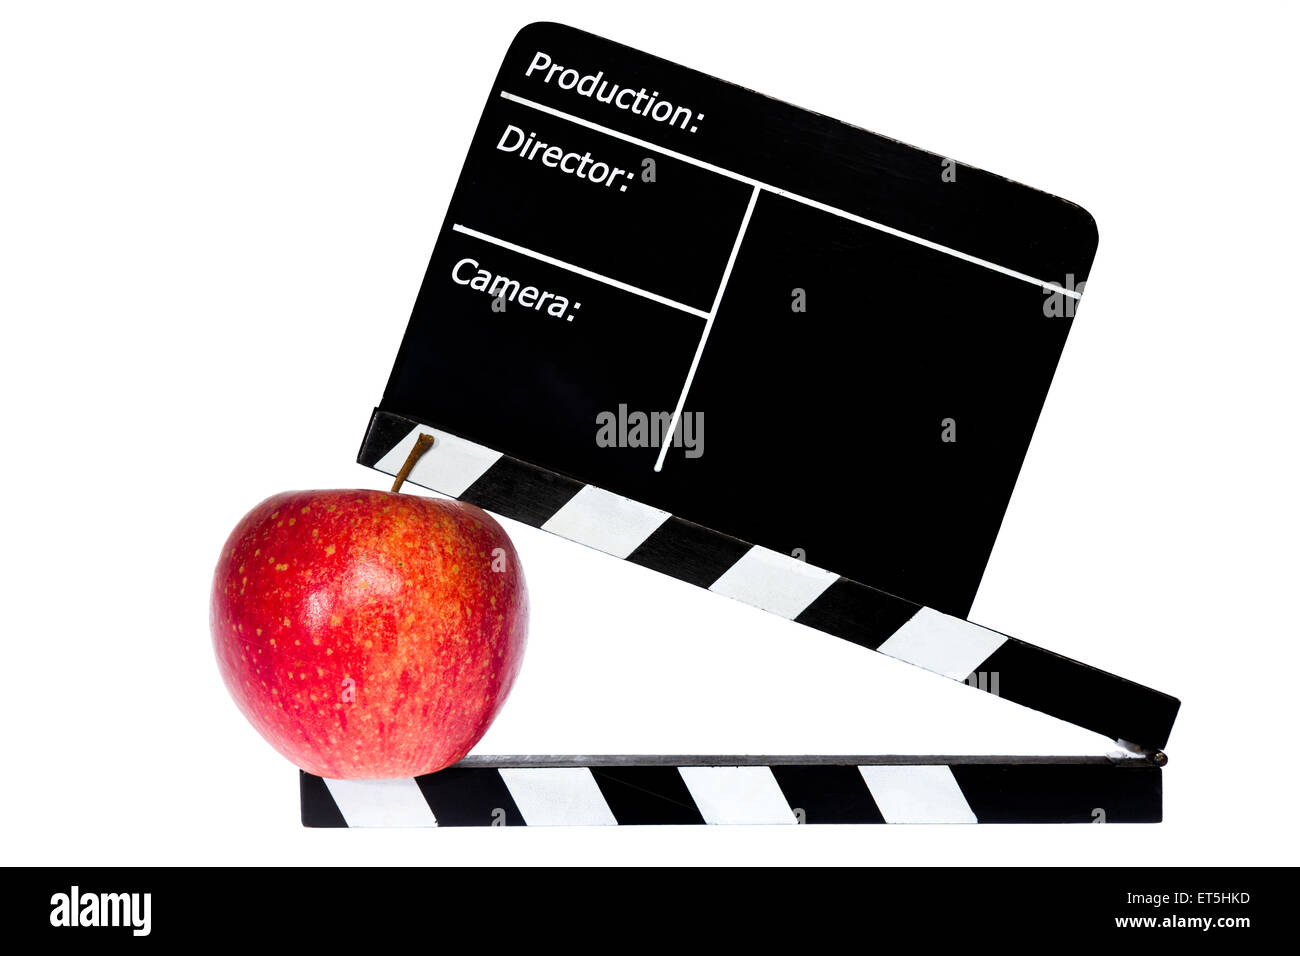 Pomme rouge et clapet du film - Fond blanc Banque D'Images